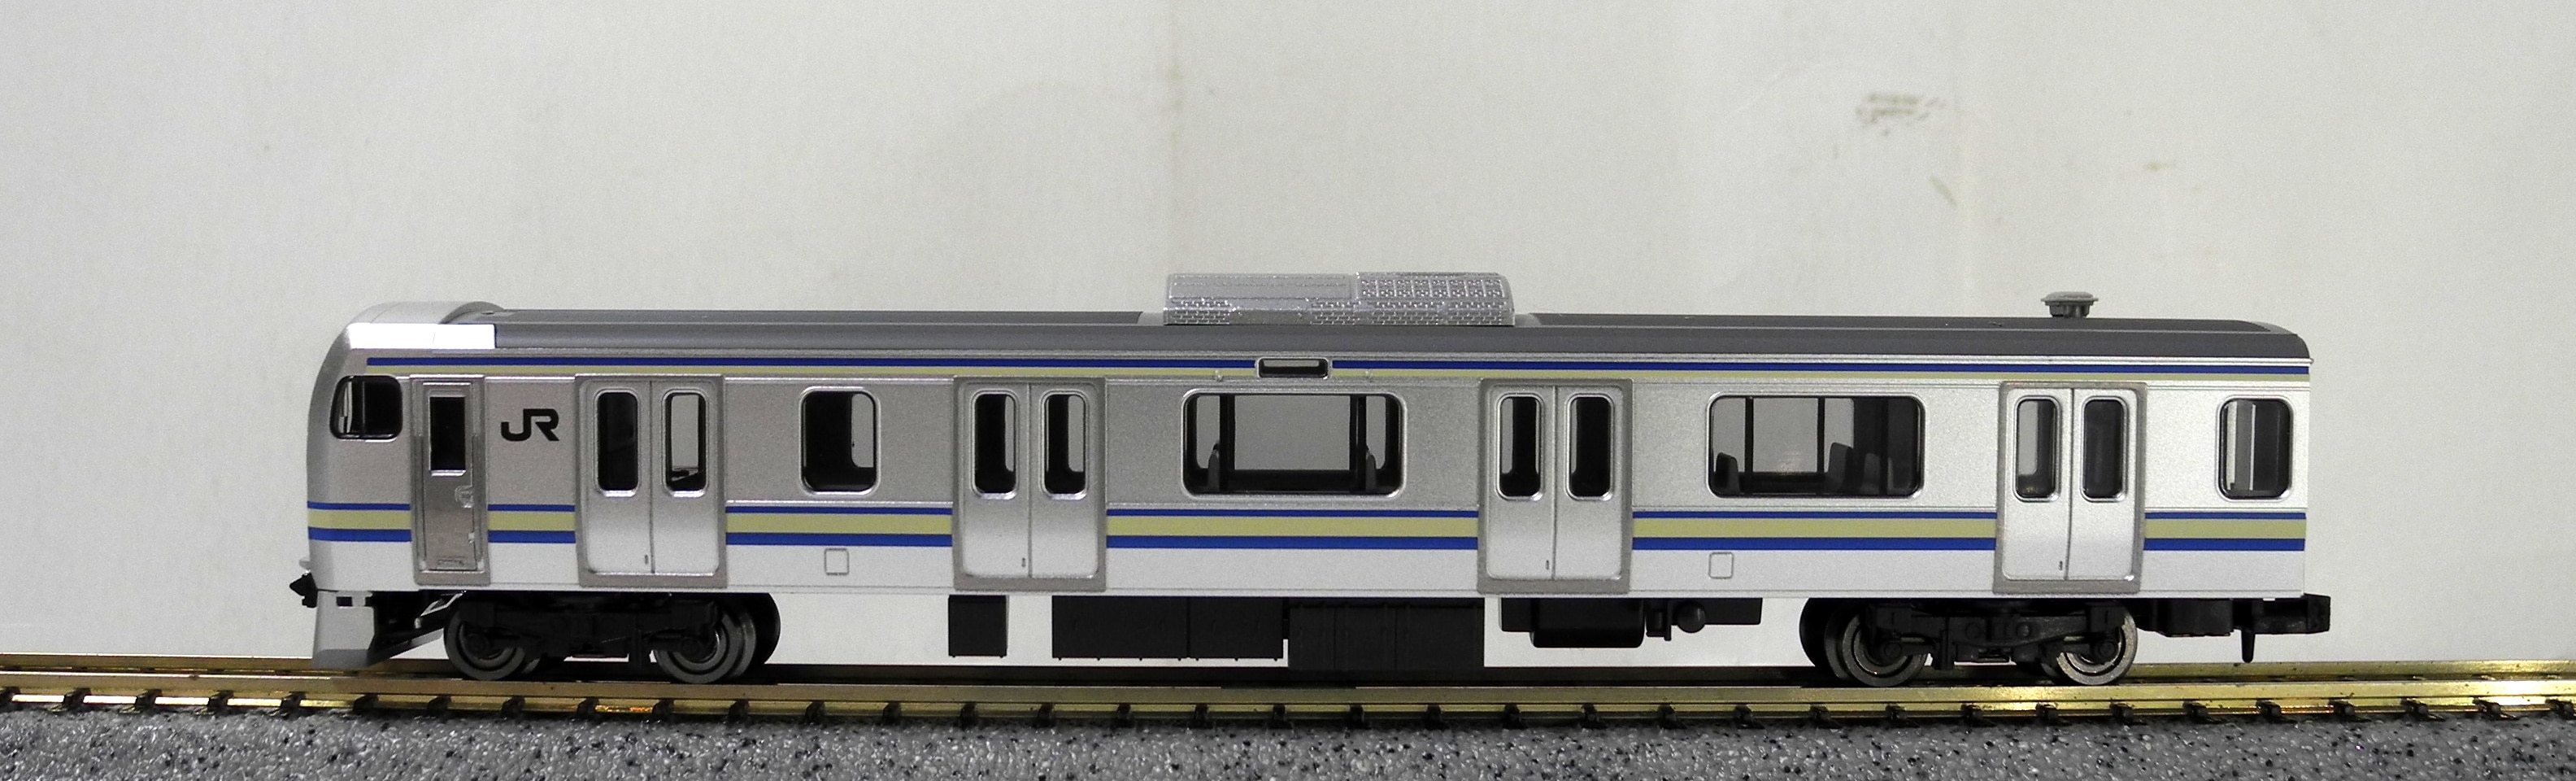 TOMIX Nゲージ 98720 【JR E217系 近郊電車 (4次車・更新車) 基本